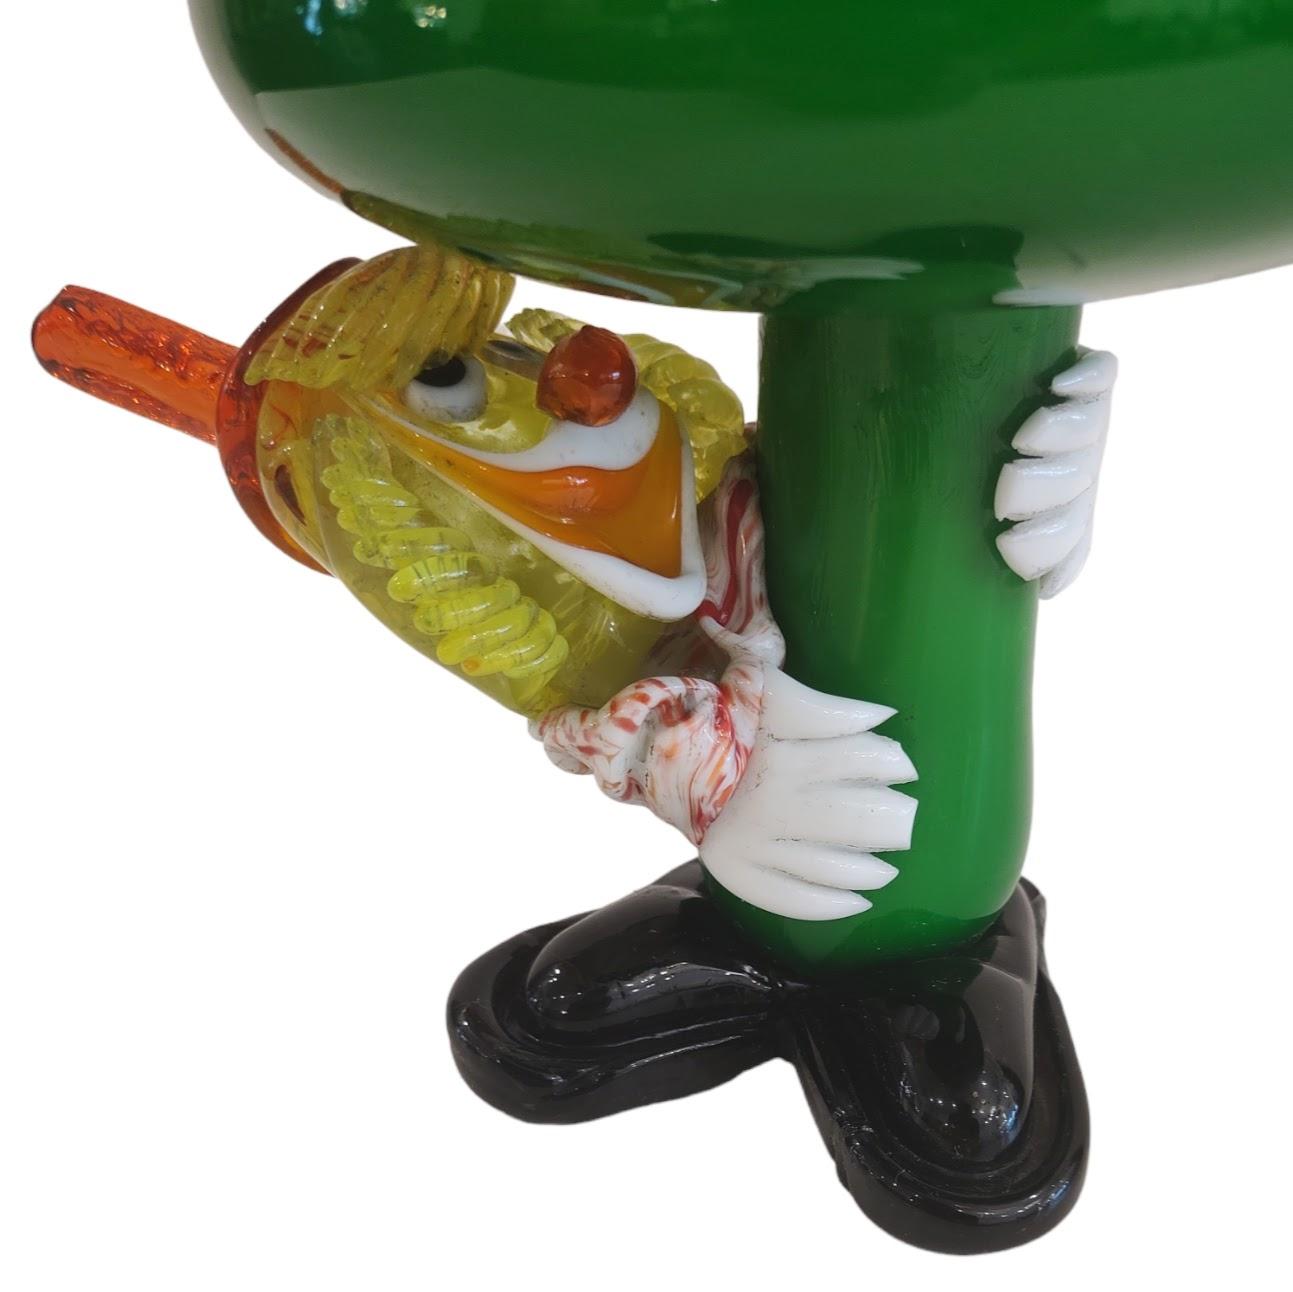 Sous le champignon, le clown vénitien de Murano 
Figurine clown et champignon en verre d'art de Murano, Italie. Le clown s'accroche à la tige du champignon et regarde autour de lui ; il est fait de verre d'art coloré. Il s'agit d'une belle pièce en